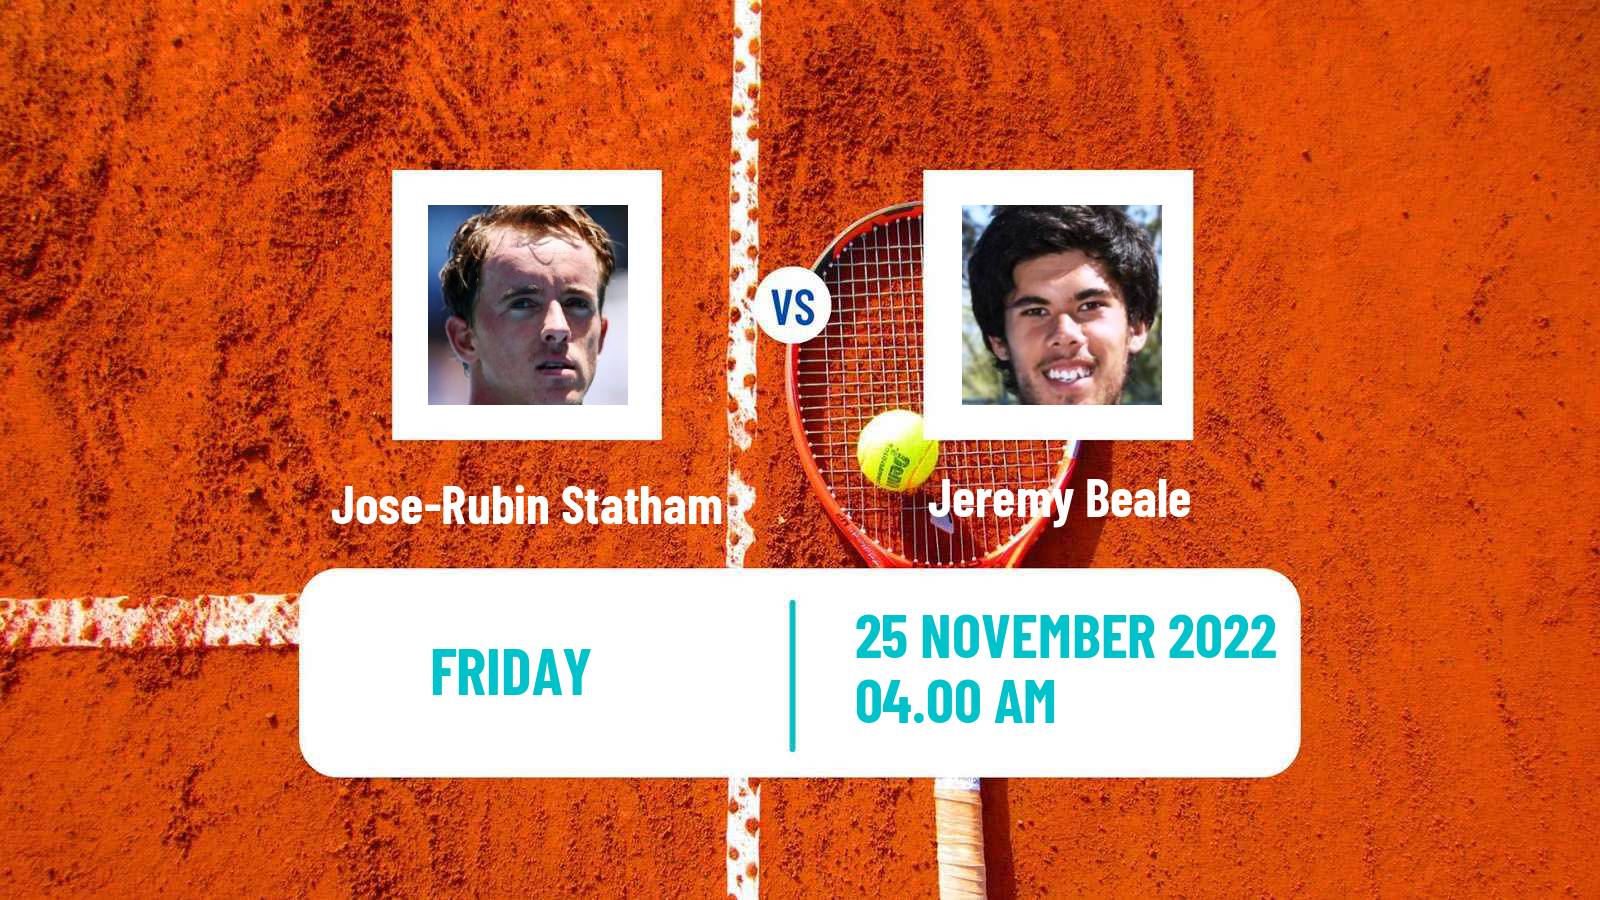 Tennis ITF Tournaments Jose-Rubin Statham - Jeremy Beale